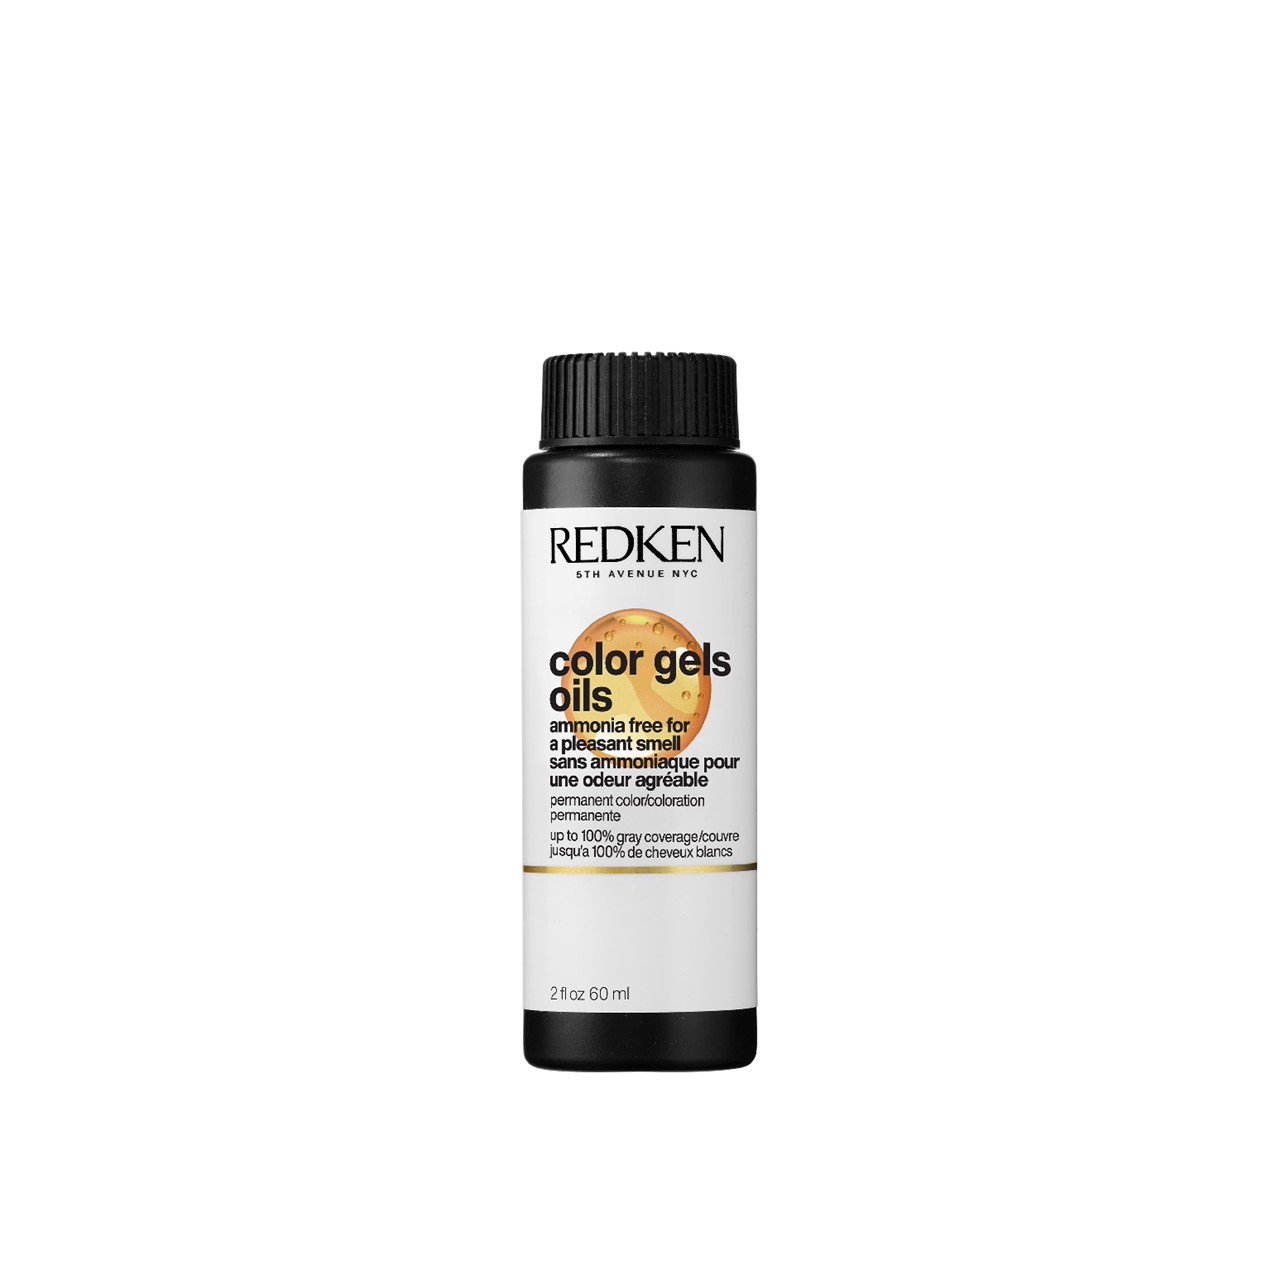 Redken Color Gels Oils 6ABn Brown Smoke Permanent Hair Dye 60ml (2.03 fl oz)